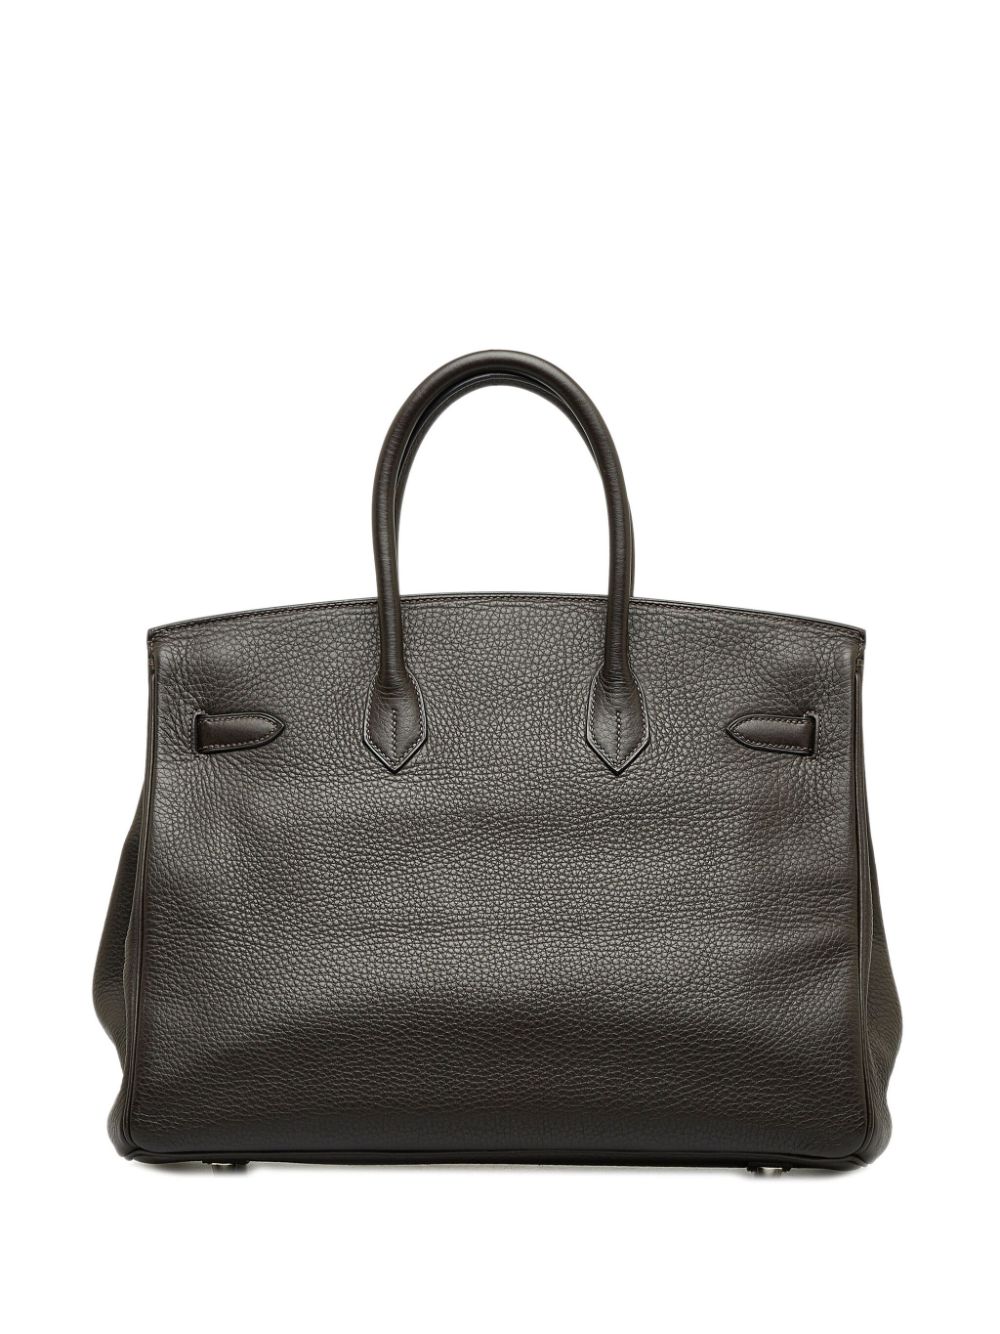 Hermès 2001 pre-owned Birkin 35 handbag - Zwart